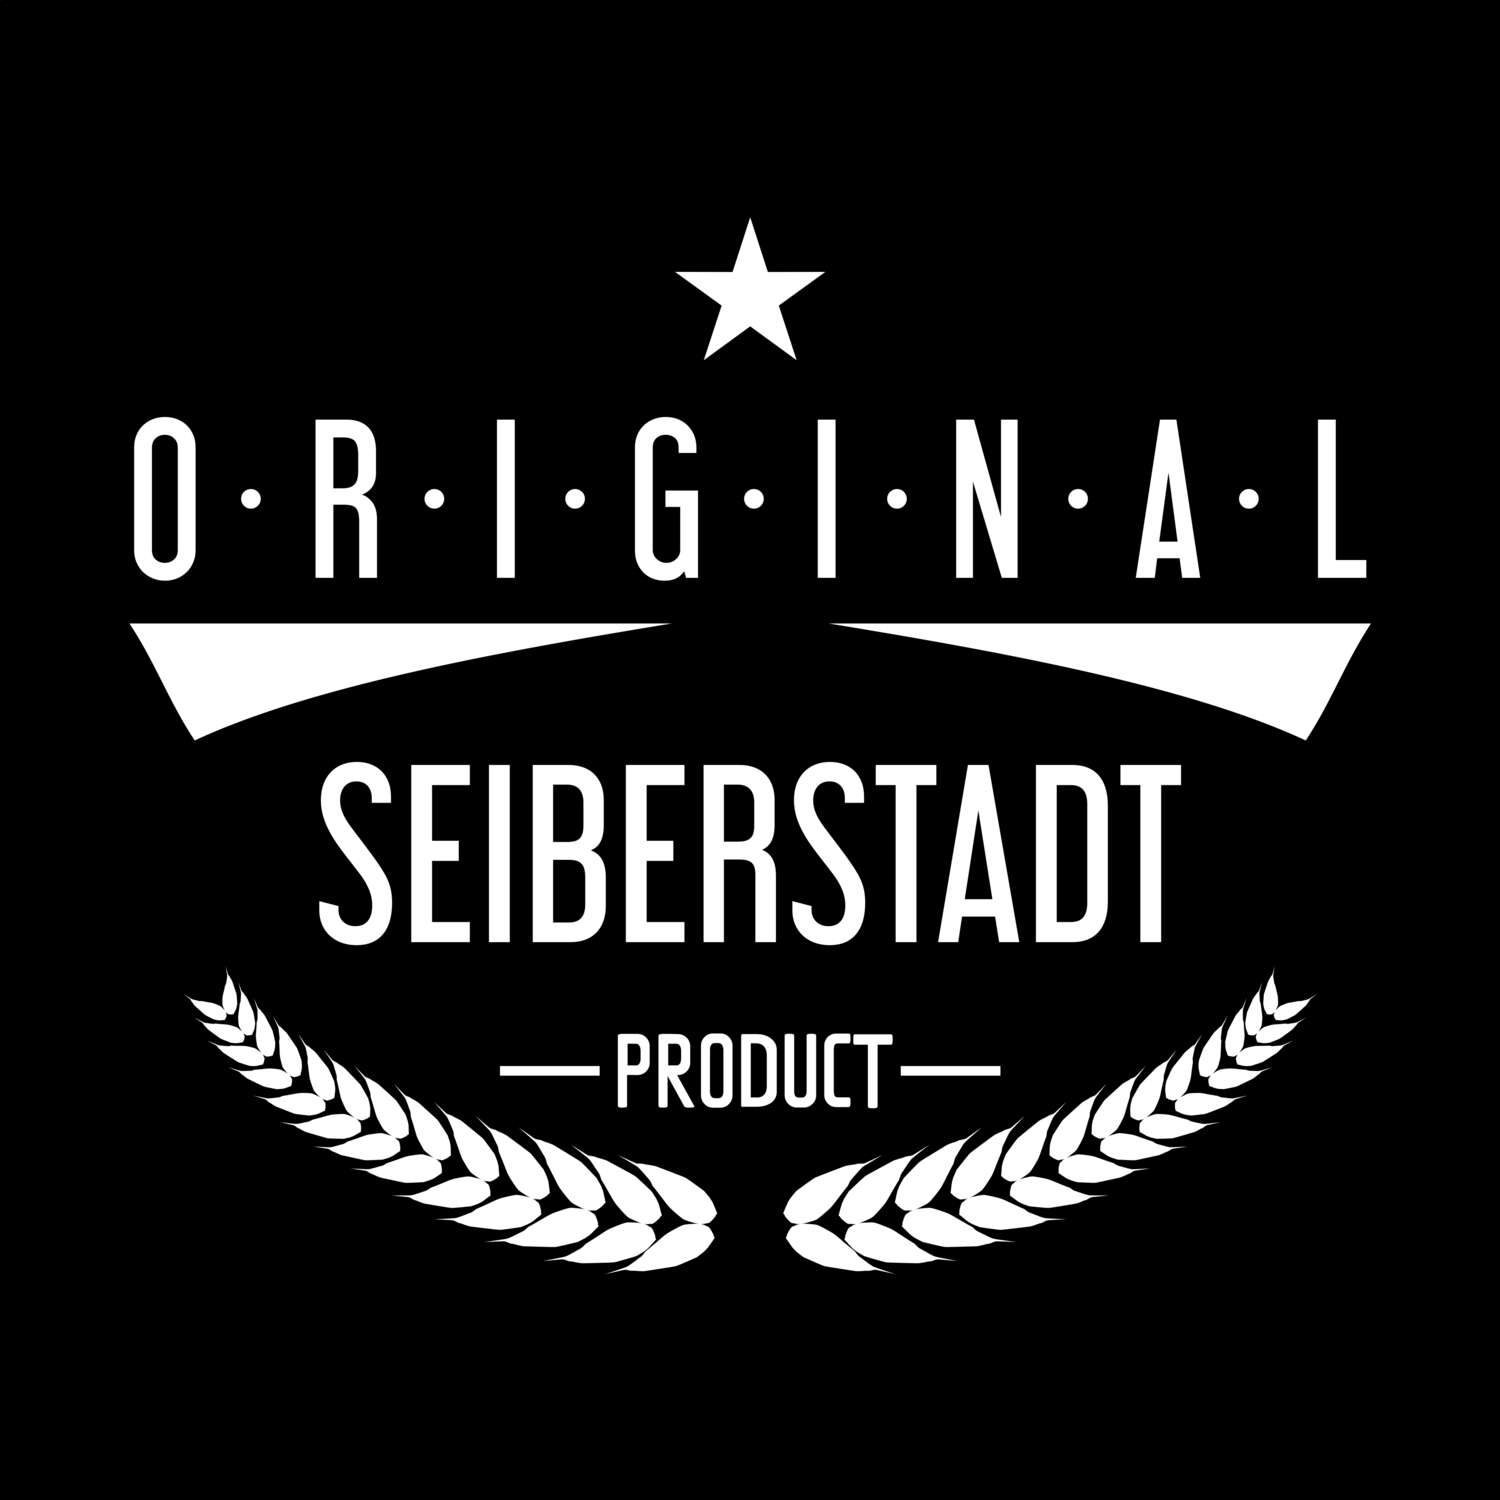 Seiberstadt T-Shirt »Original Product«